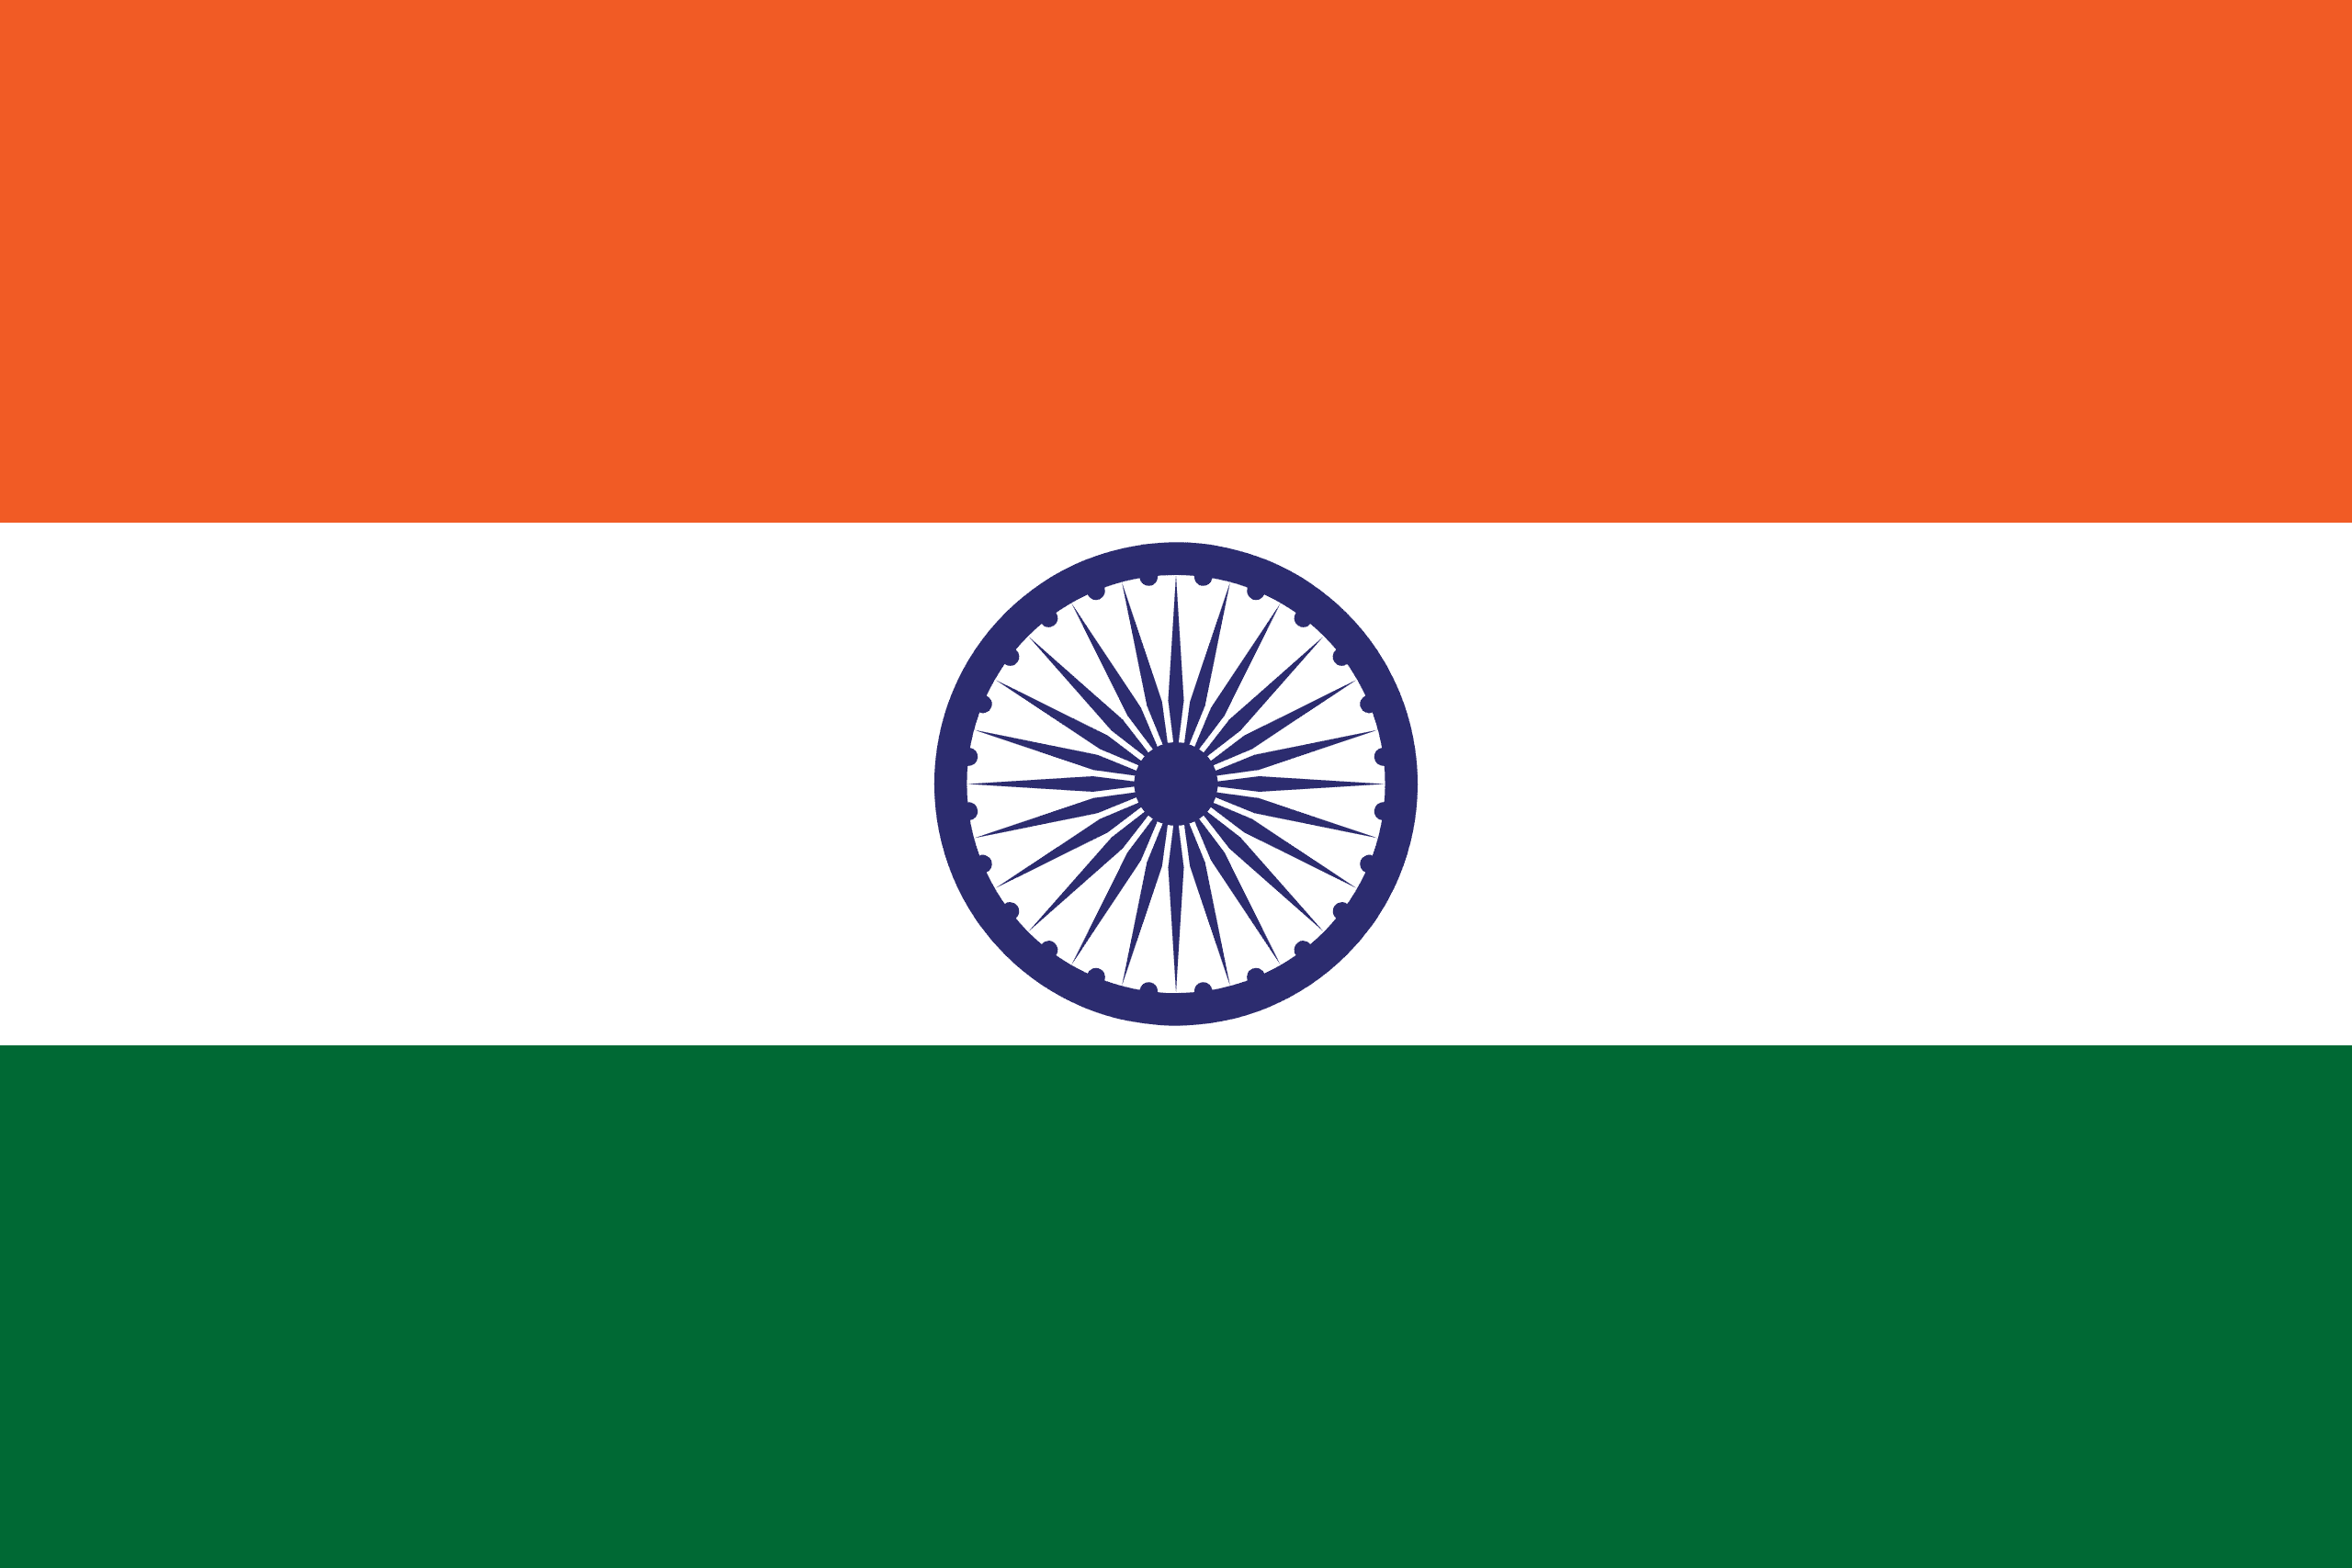 Flagge von Indien